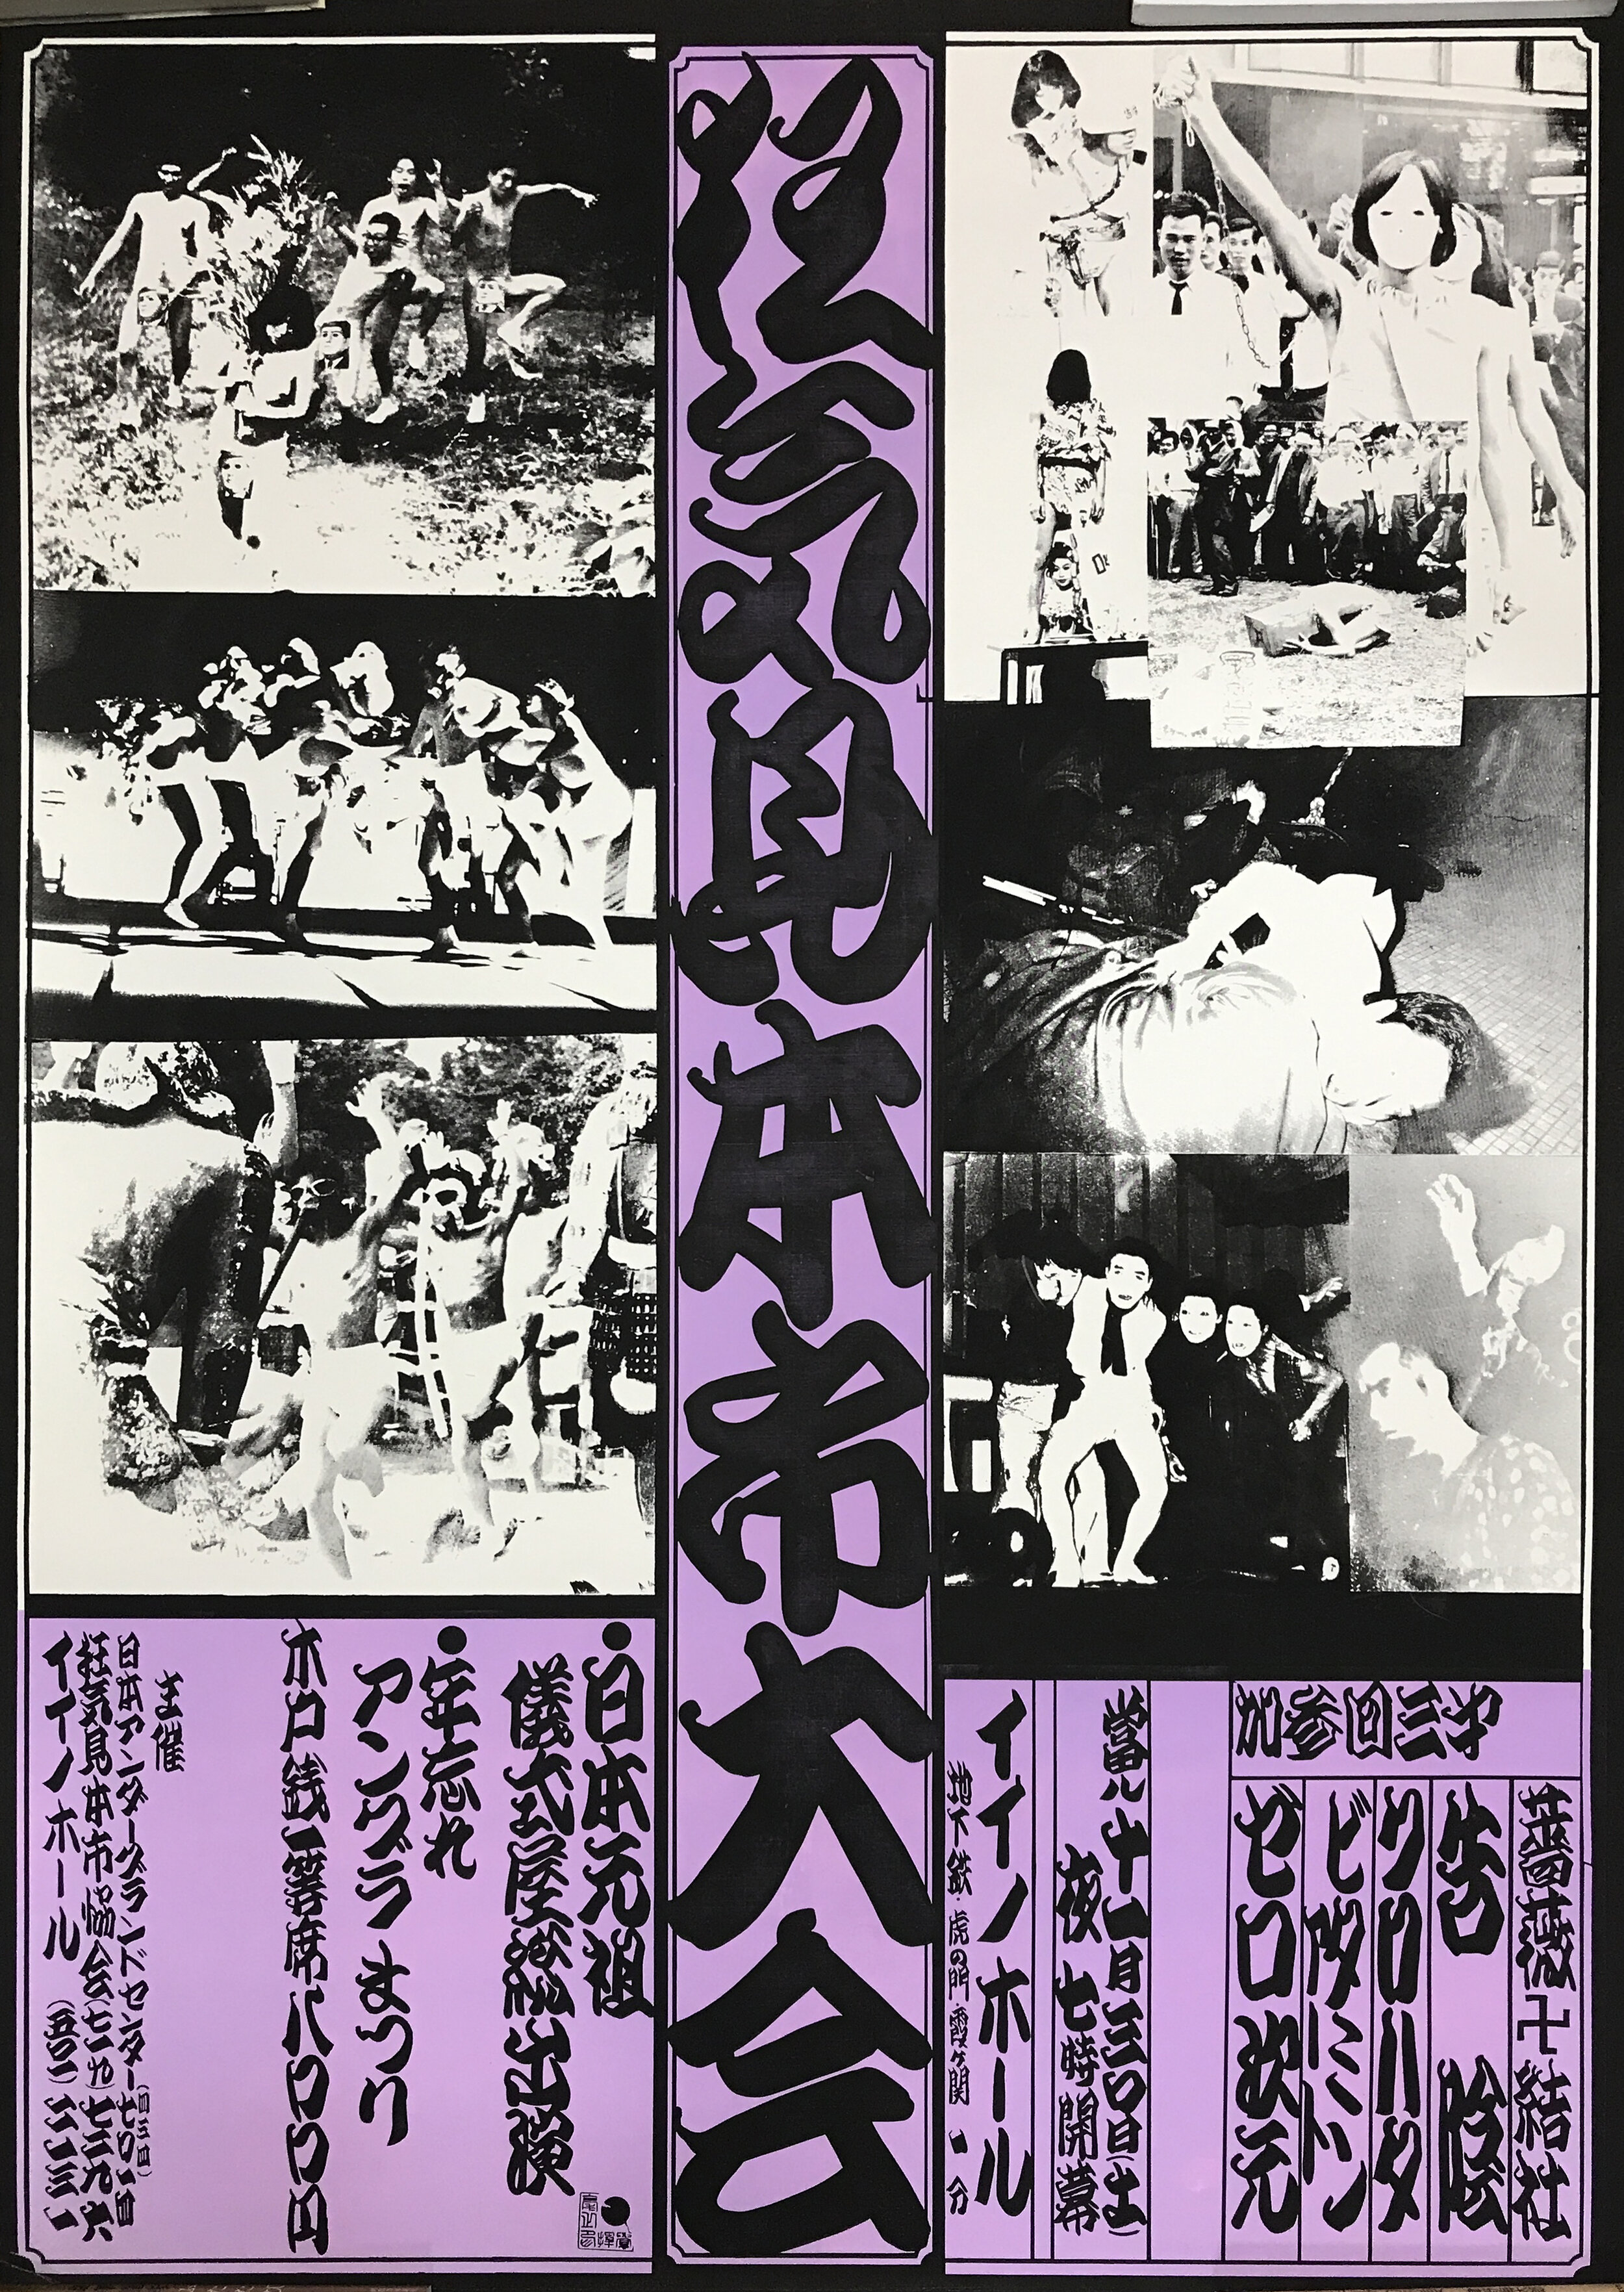  [fig. 7] 「狂気見本市大会　年忘れアングラまつり」のポスター（イイノホール、1968年11月30日、©ゼロ次元・加藤好弘アーカイヴ） 